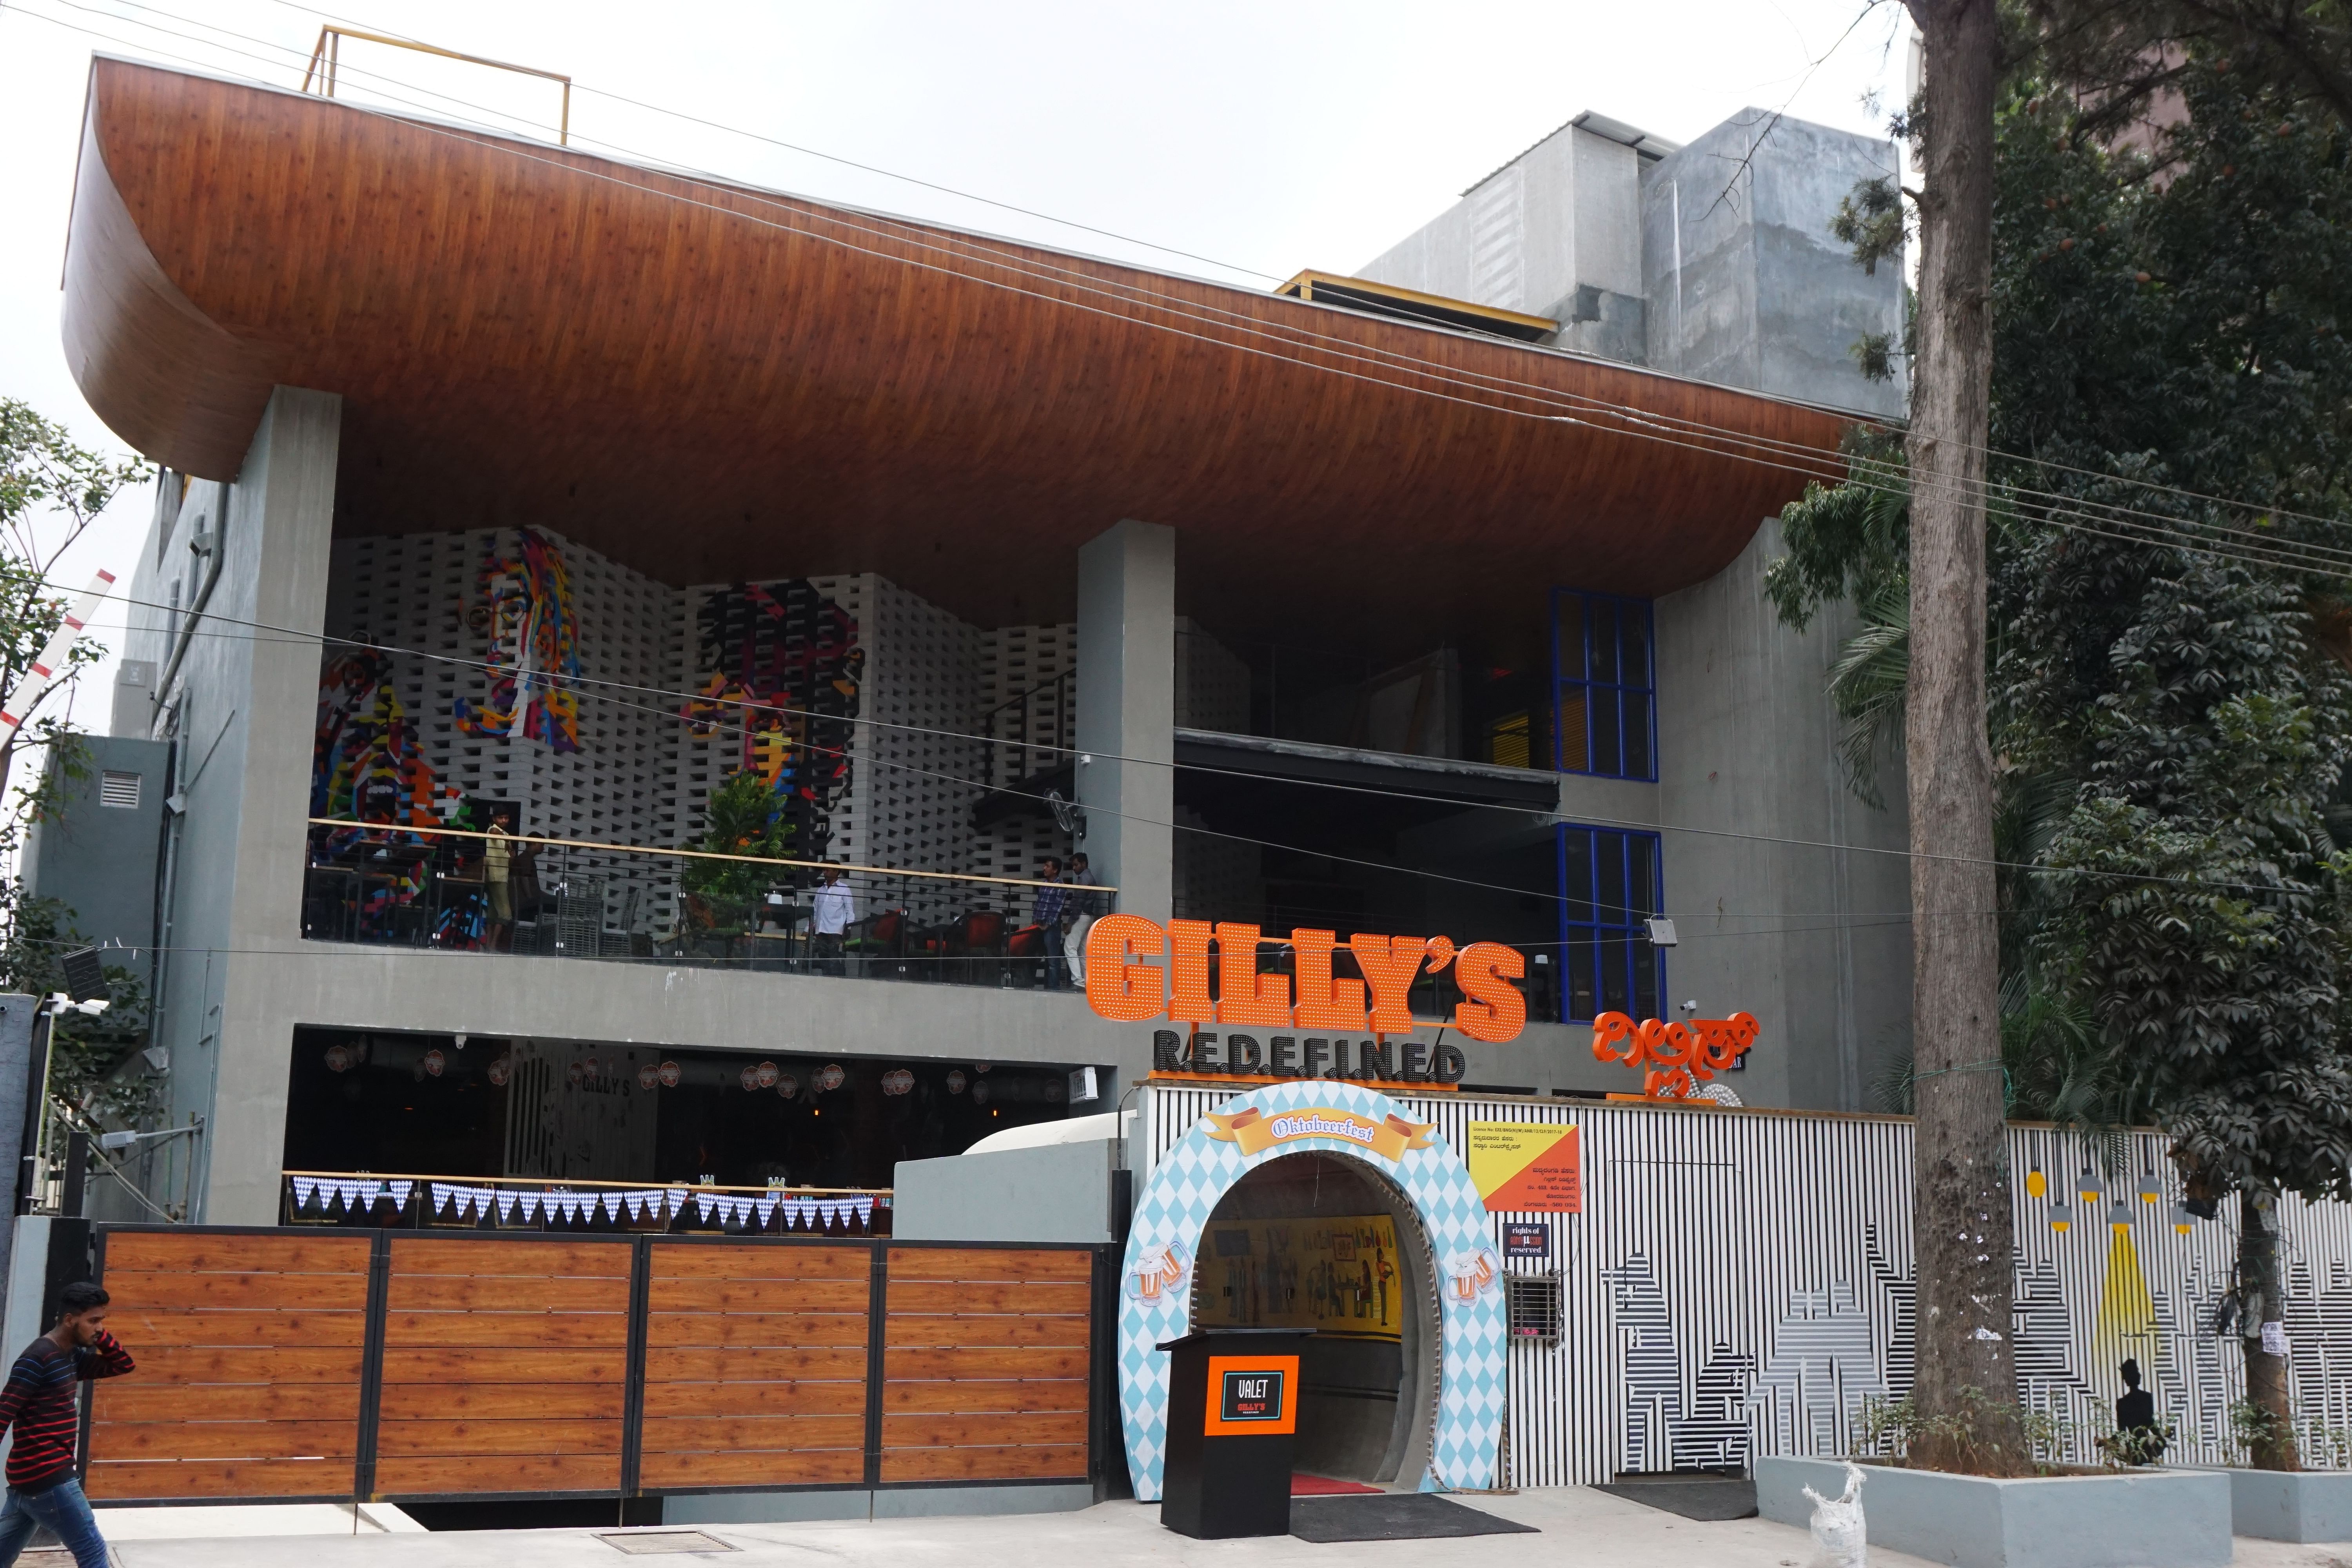 Myu Bar At Gillys Redefined in Koramangala, Bangalore